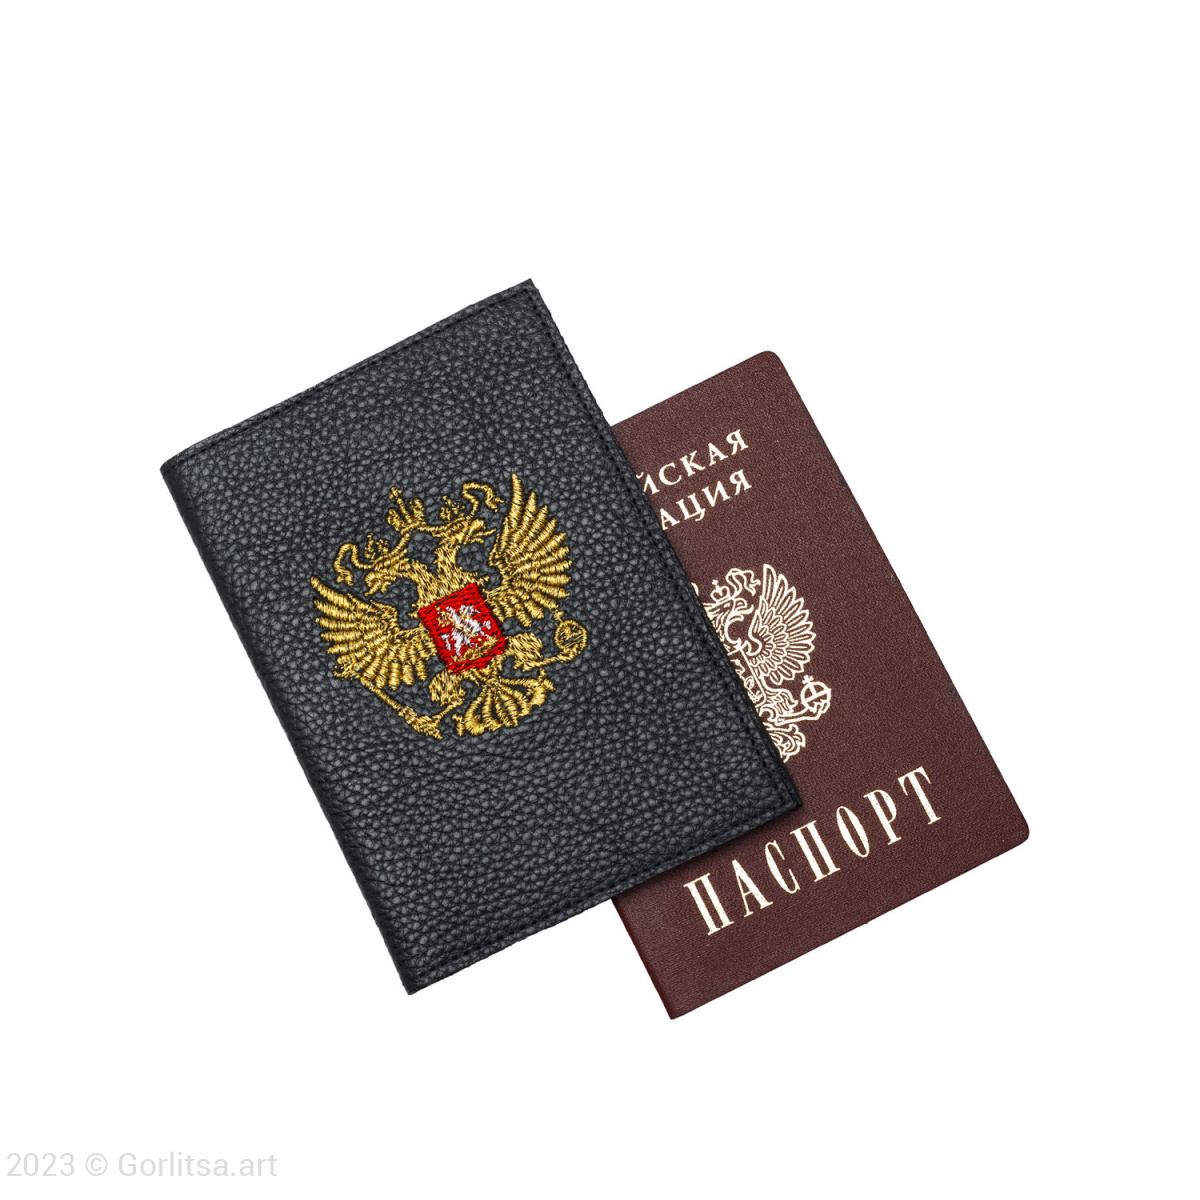 Обложка для паспорта «Герб» 60131-1-2, кожа, цвет: чёрный/ золото  нат. кожа Никифоровская мануфактура